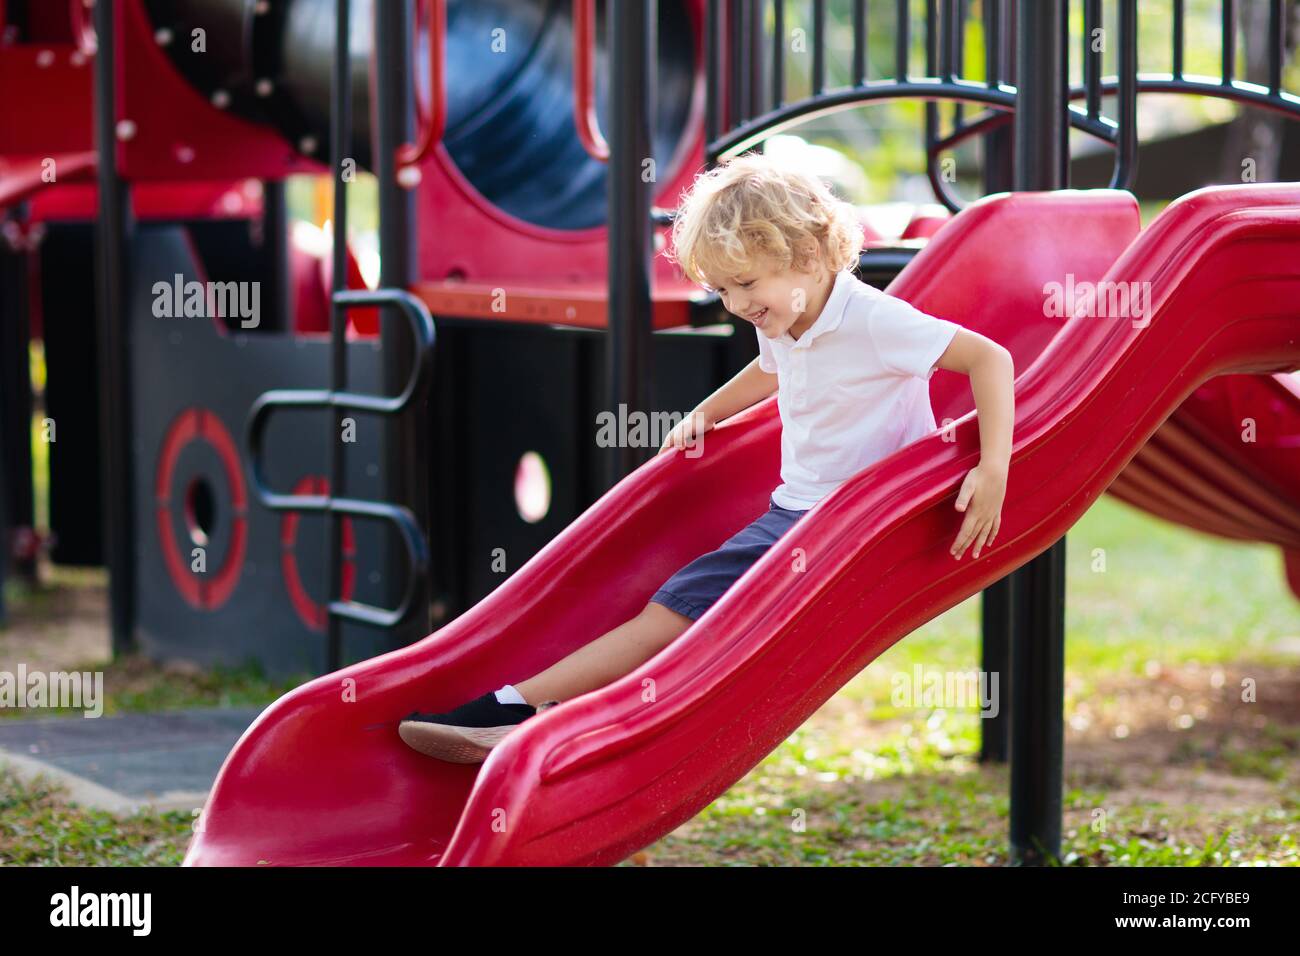 Niños jugando en un patio exterior. Los niños juegan en el patio de la escuela o guardería. Active kid sobre diapositivas coloridas y swing. Actividad de verano saludable para chi Foto de stock